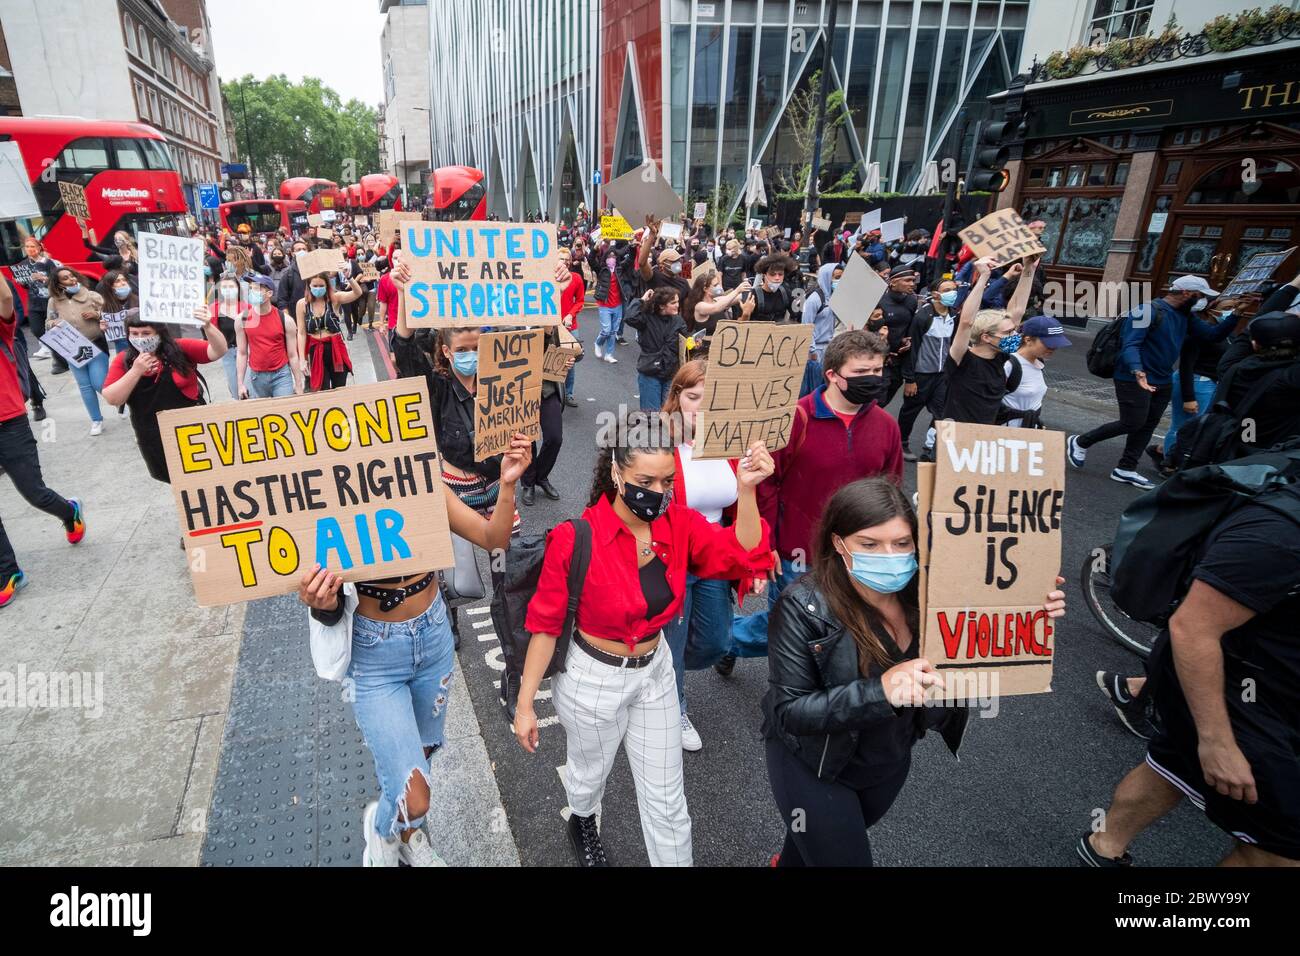 Londres, Reino Unido: 3 de junio de 2020: Las vidas negras importan a los manifestantes con señales que caminan desde Westminster pasando la estación Victoria Foto de stock